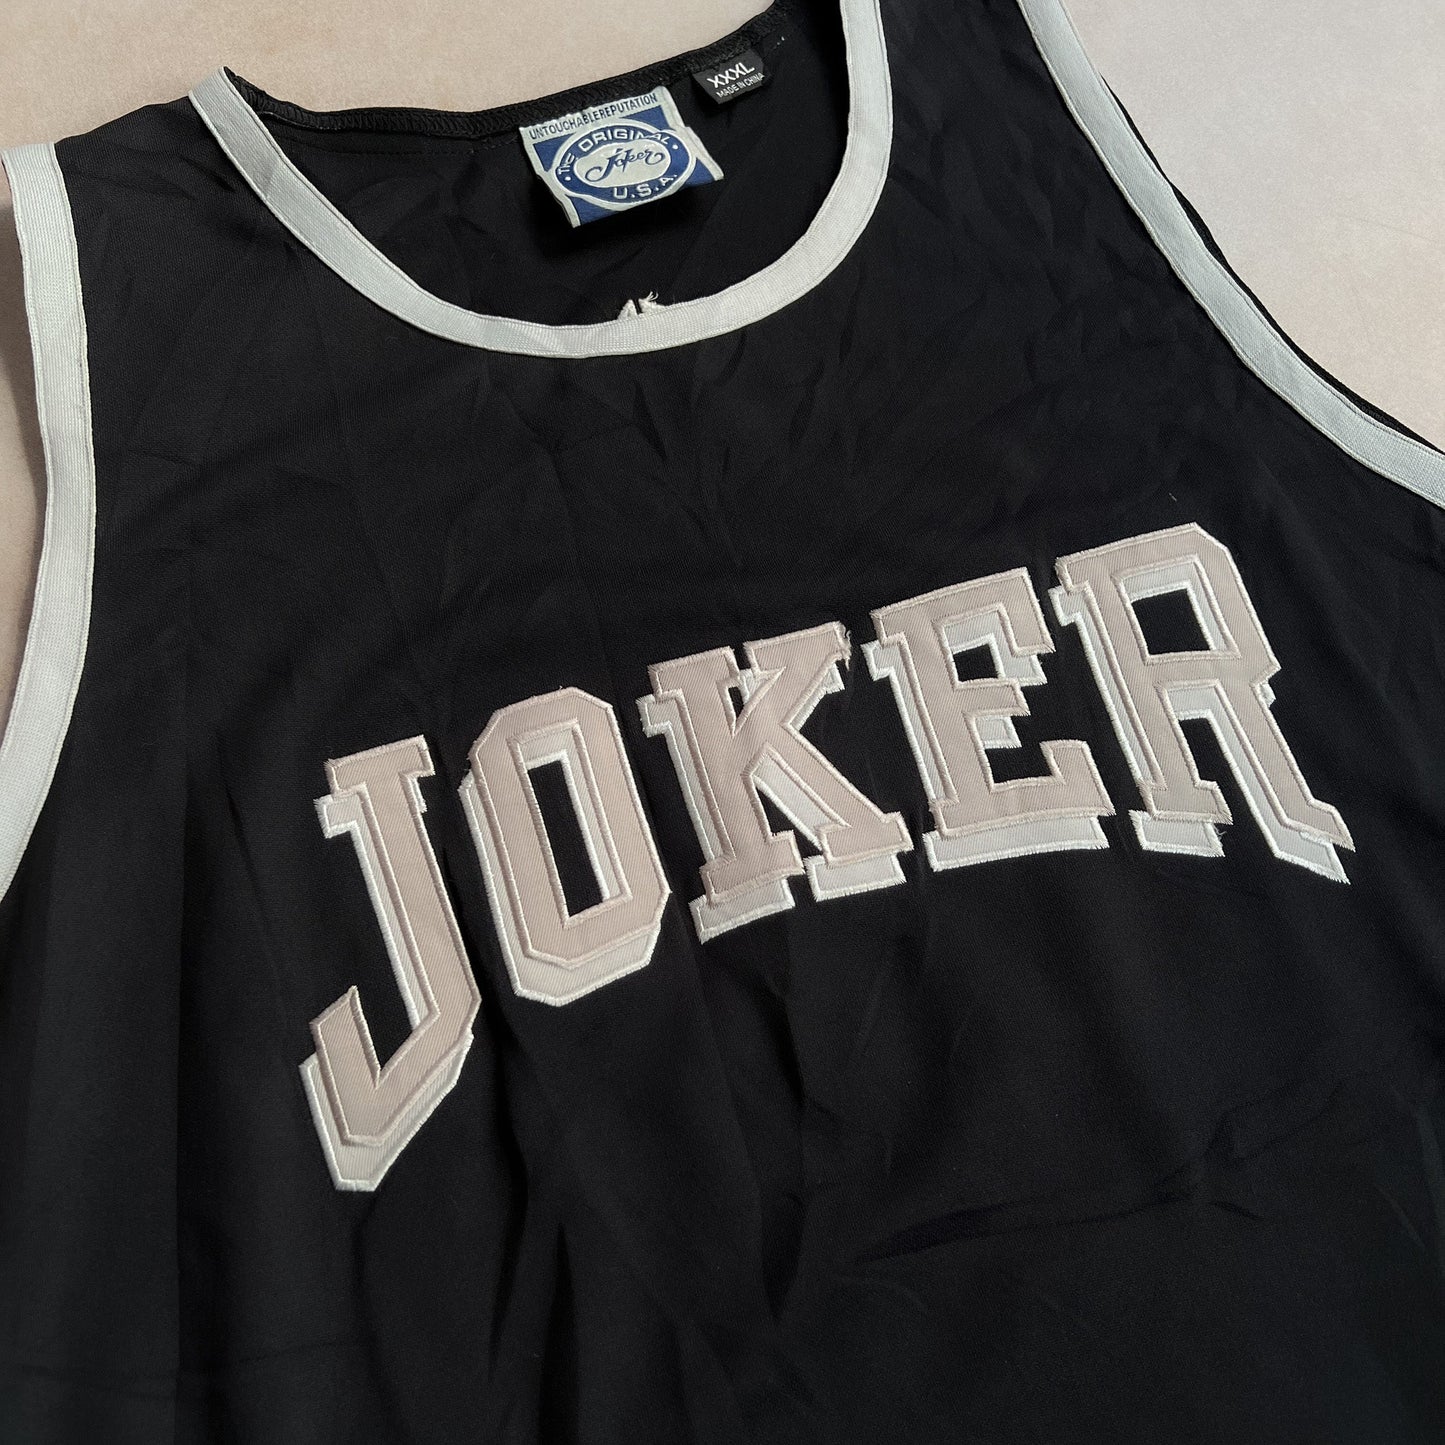 2000s Y2K Joker Brand Black Jersey - 3XL sullivansvintage